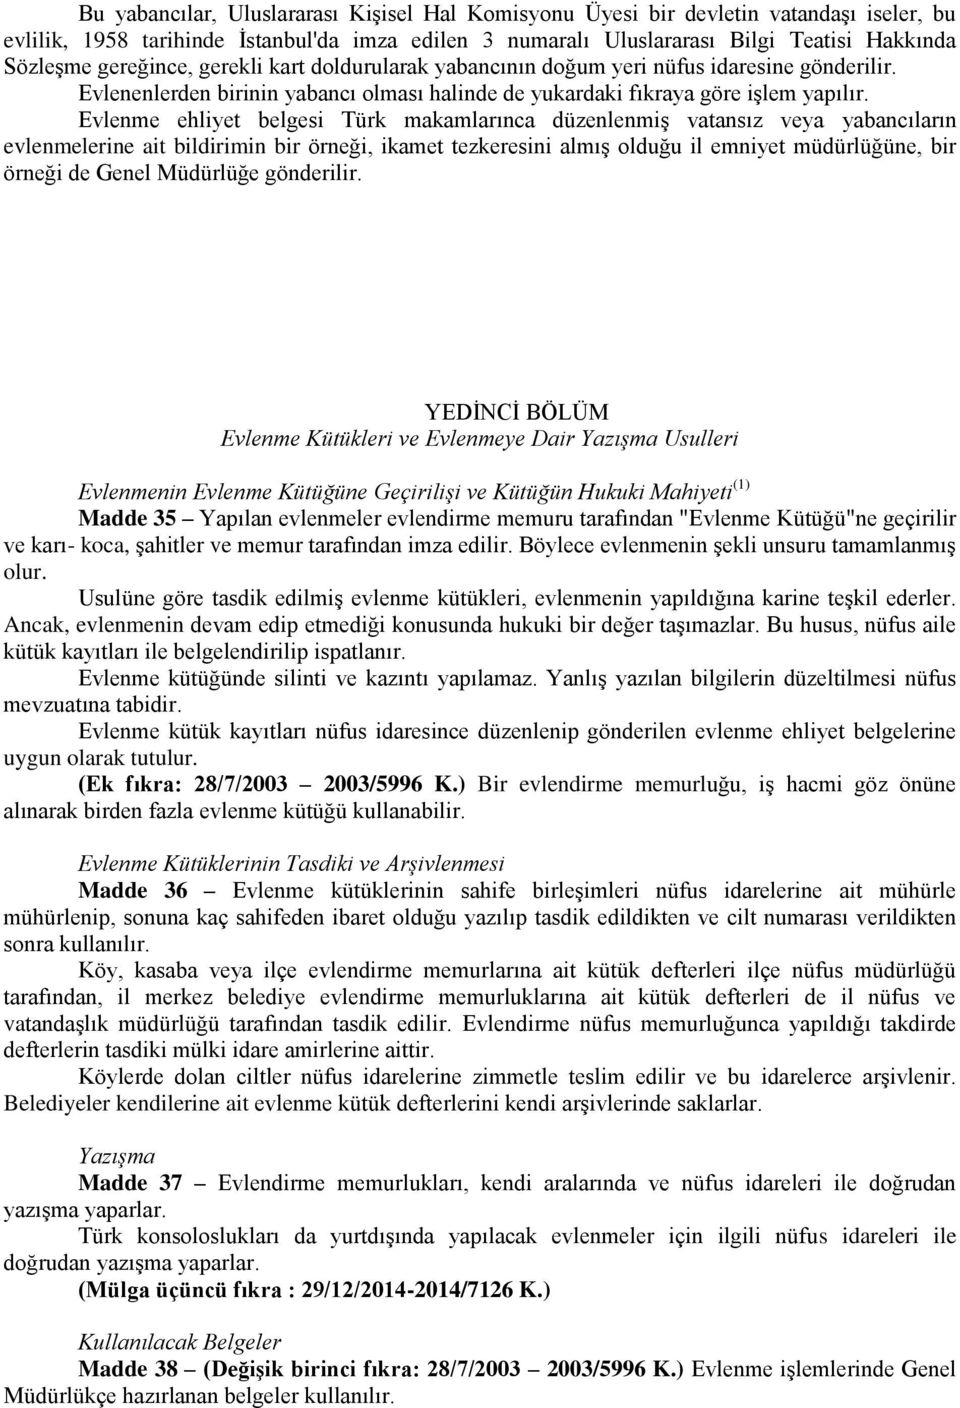 Evlenme ehliyet belgesi Türk makamlarınca düzenlenmiş vatansız veya yabancıların evlenmelerine ait bildirimin bir örneği, ikamet tezkeresini almış olduğu il emniyet müdürlüğüne, bir örneği de Genel